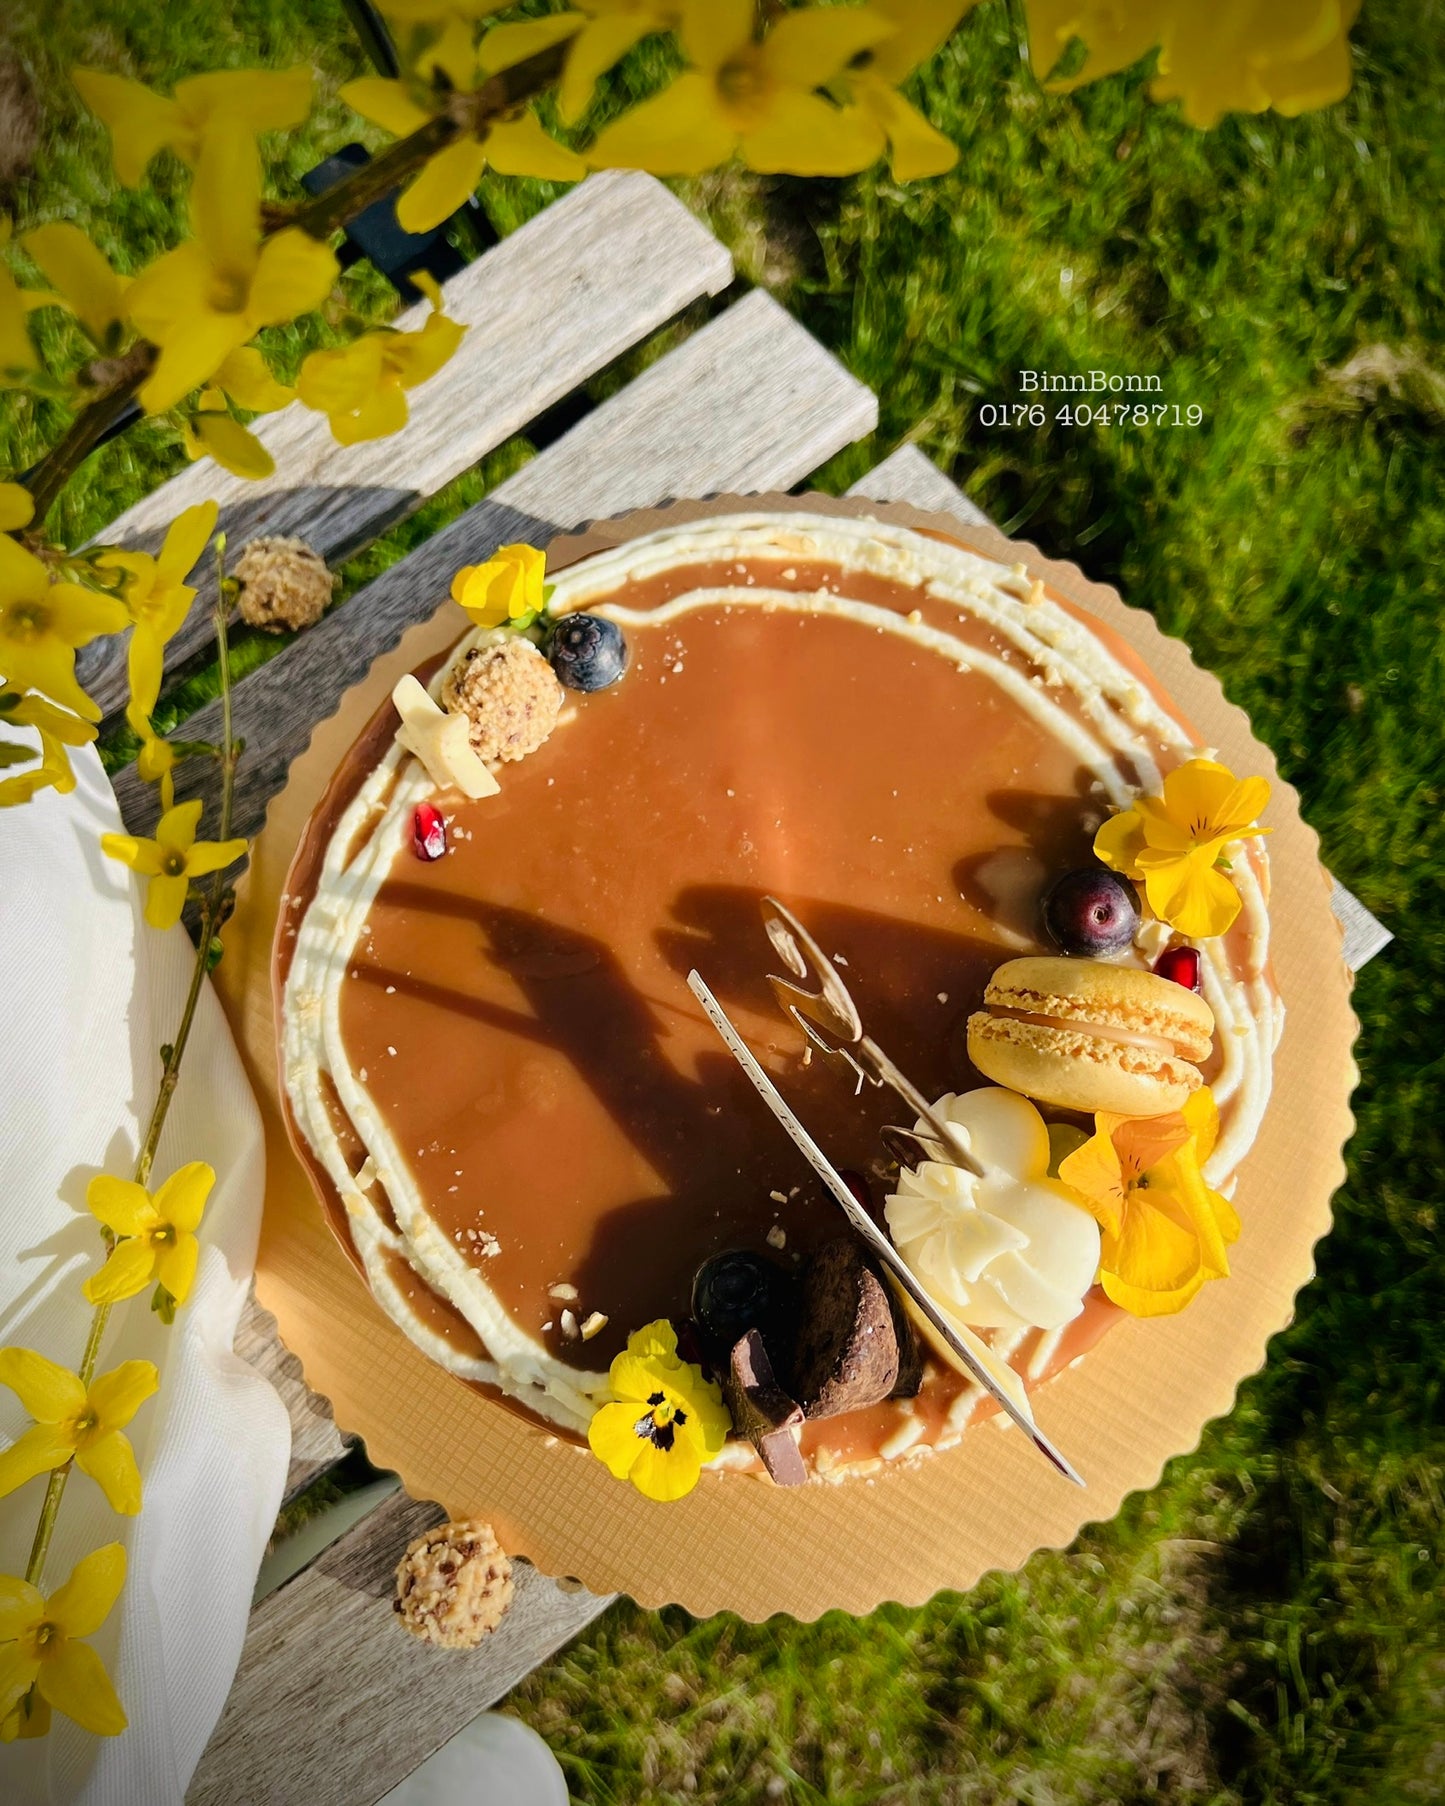 49. Torte "Love and Cheesecake" mit salziger Karamellsauce und Cashew 23 cm